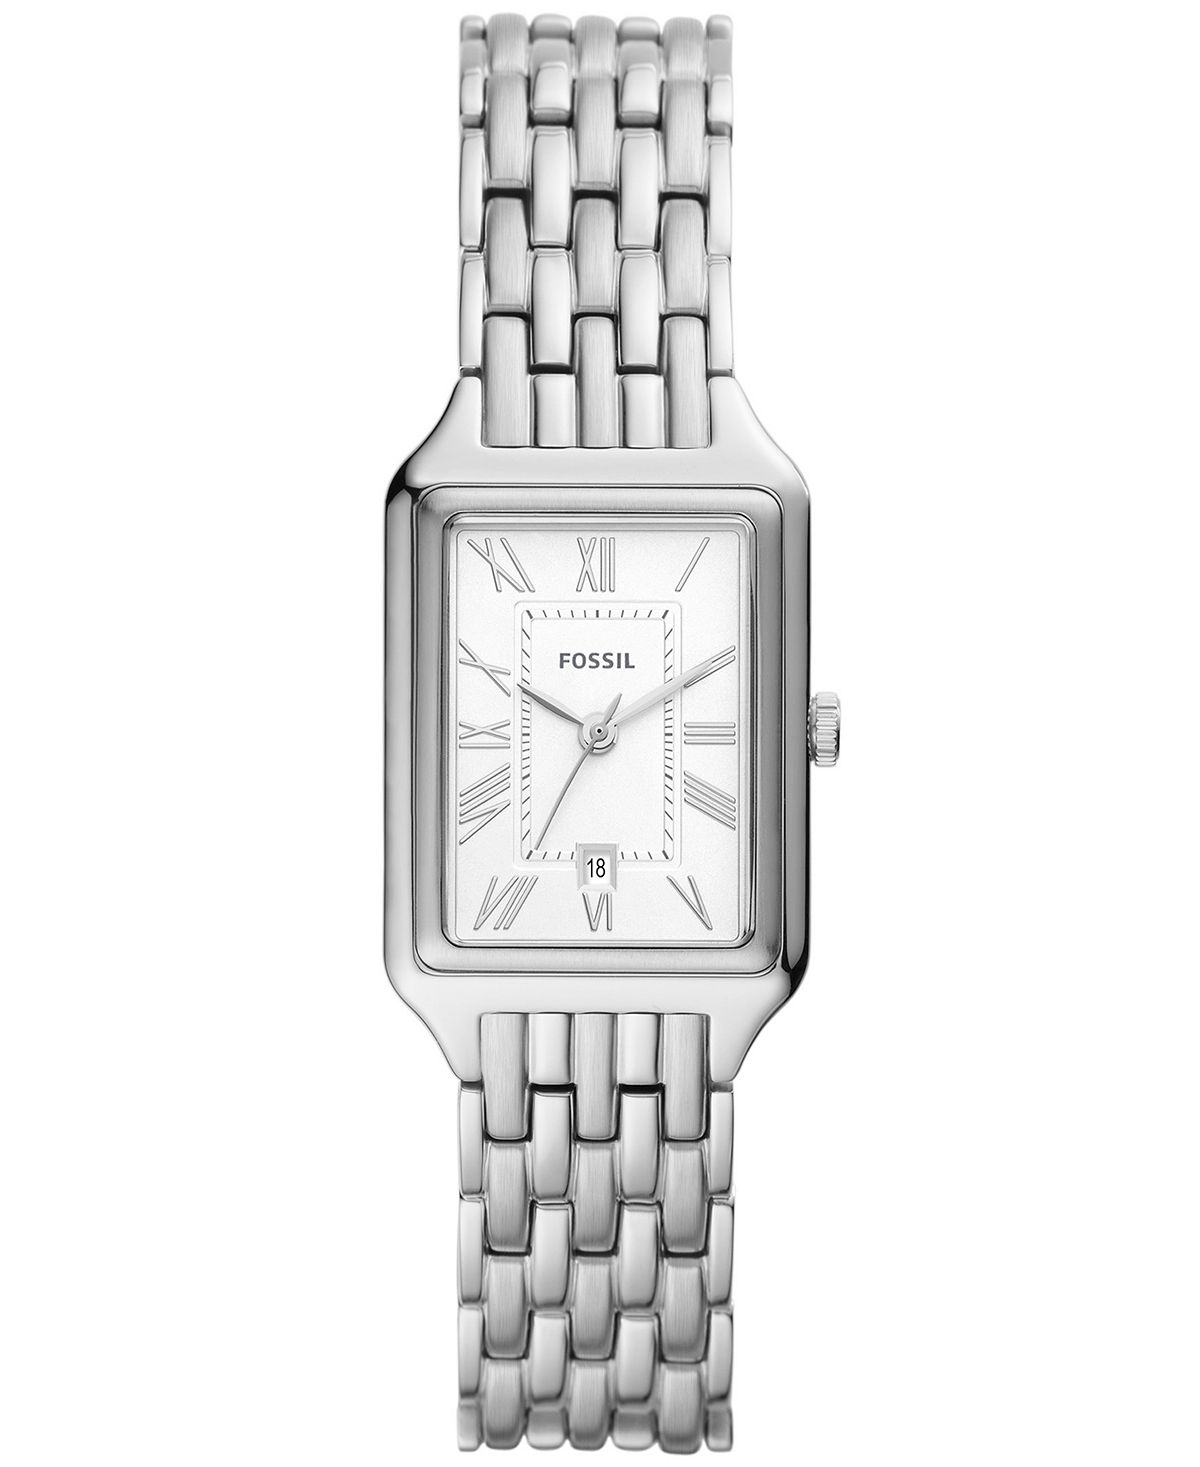 Женские часы Raquel серебристого цвета с браслетом из нержавеющей стали, 23 мм Fossil женские часы cristal из нержавеющей стали серебристого цвета 28 мм jbw